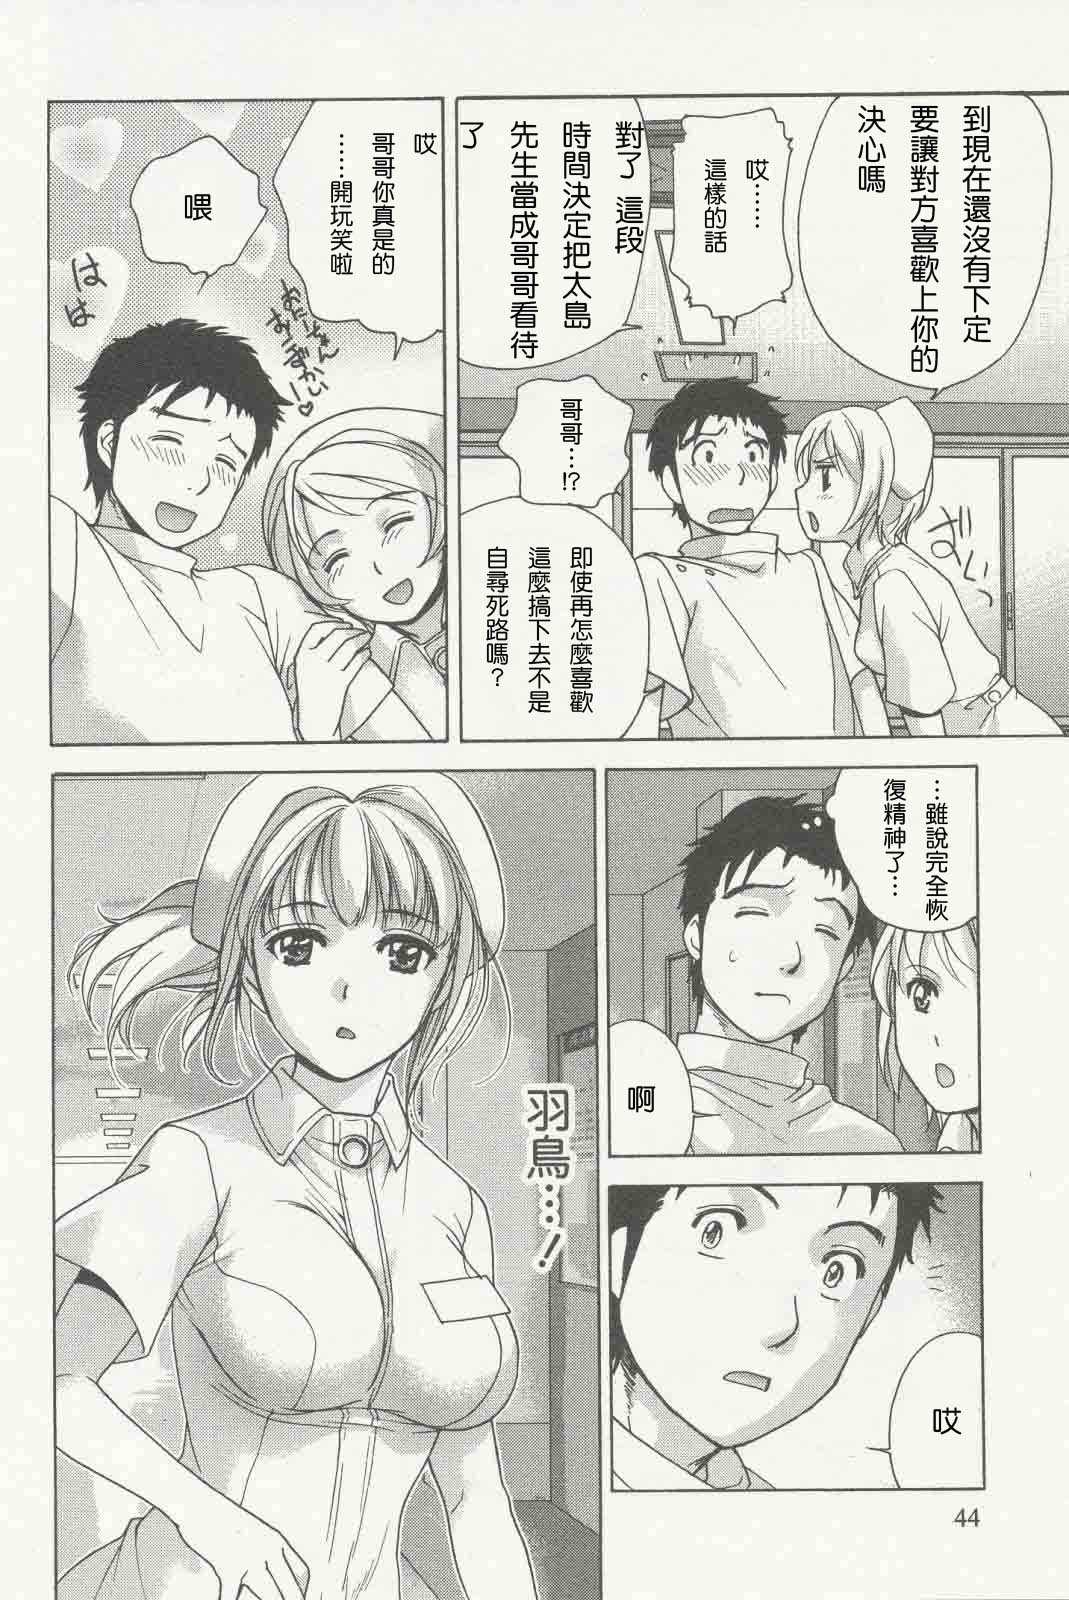 [Fuzisaka Kuuki] Nurse wo Kanojo ni Suru Houhou CH.09-11 [CHINESE] [藤坂空樹] ナースを彼女にする方法 第9-11話 [CHINESE]